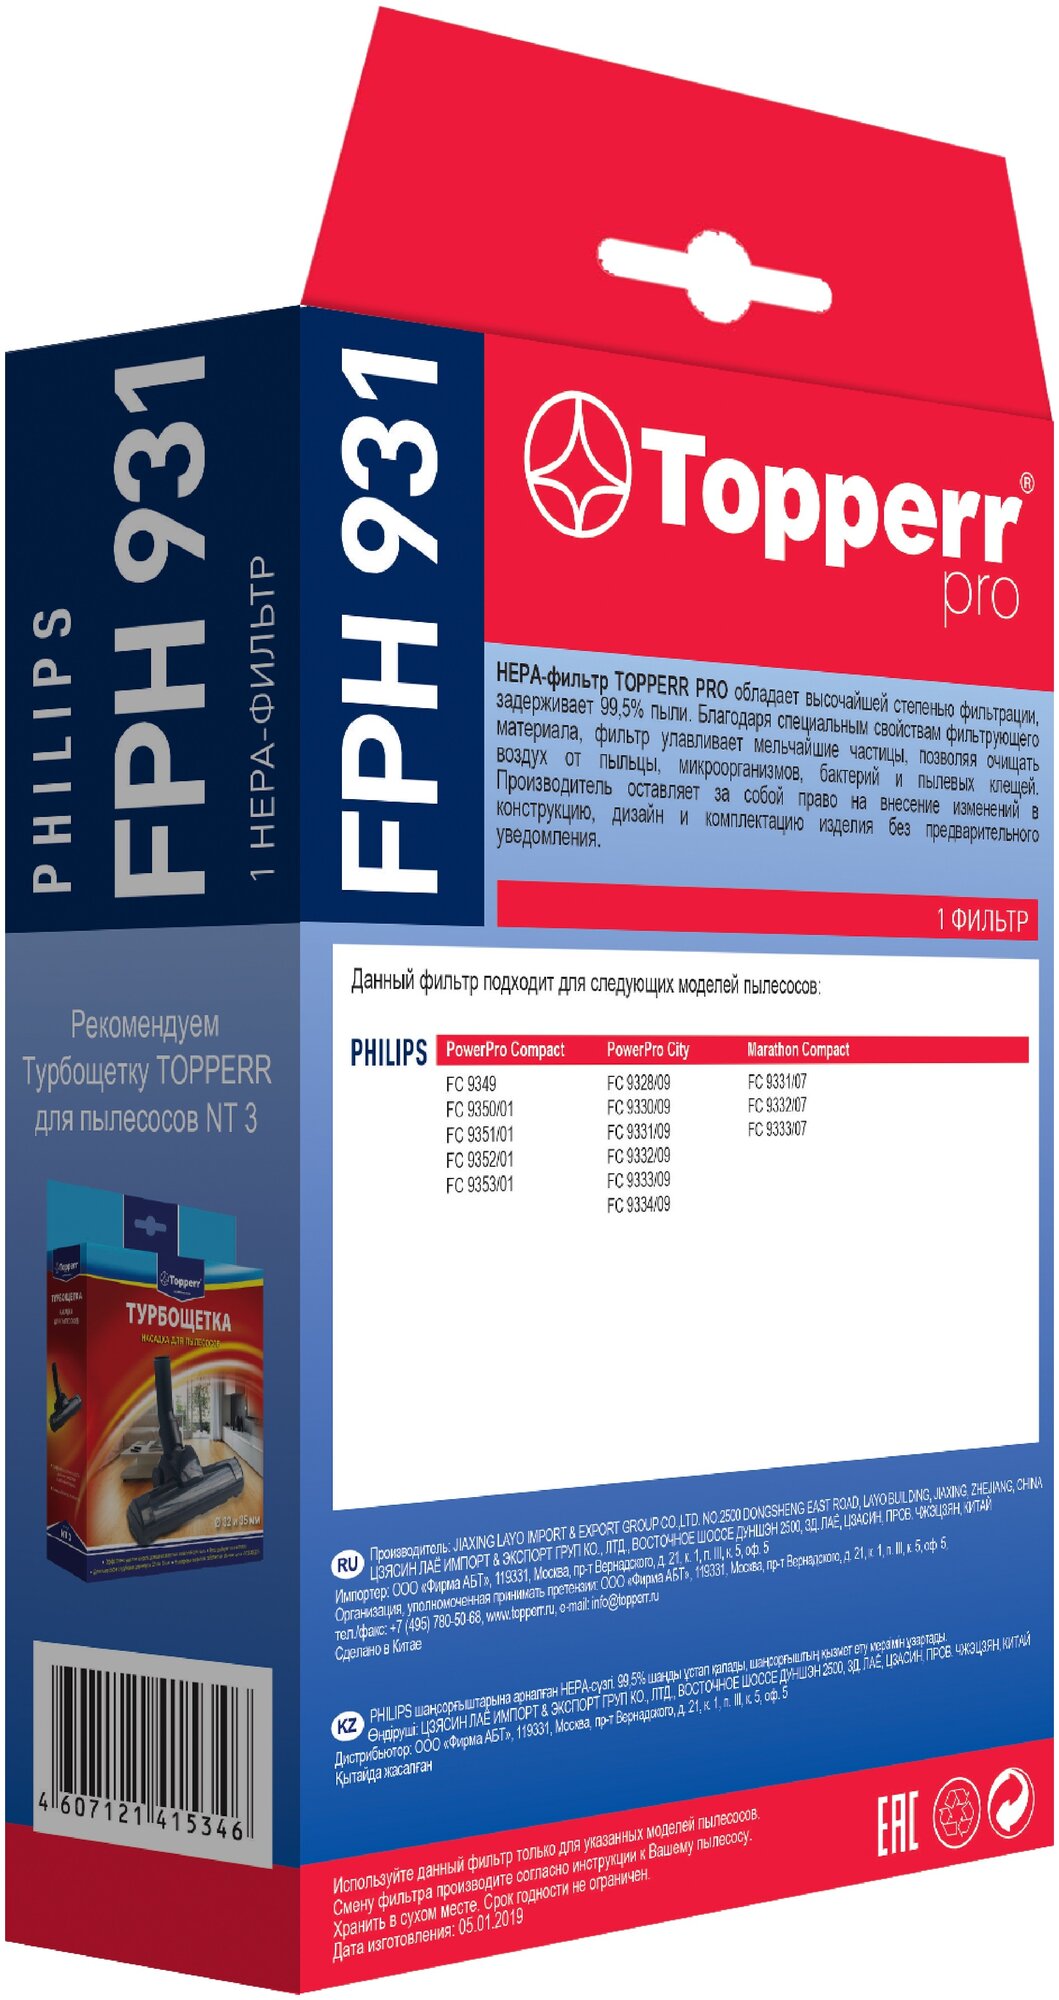 НЕРА-фильтр TOPPERR FPH931 , для пылесосов PHILIPS PowerPro Compact, PowerPro City, Marathon Compact - фото №4